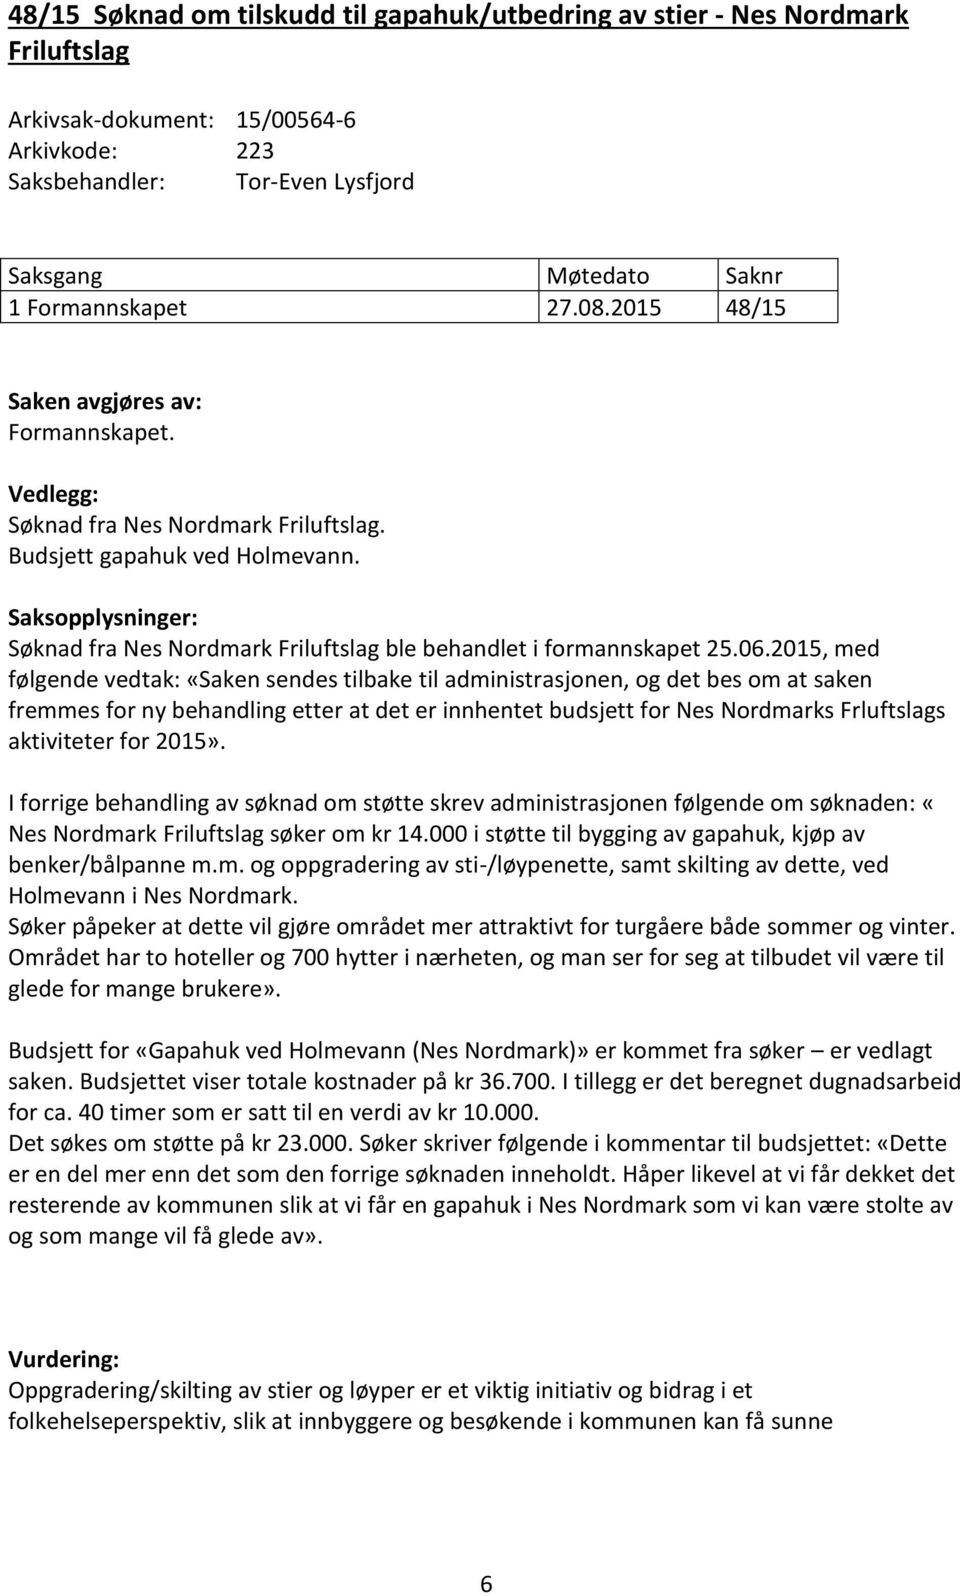 Saksopplysninger: Søknad fra Nes Nordmark Friluftslag ble behandlet i formannskapet 25.06.